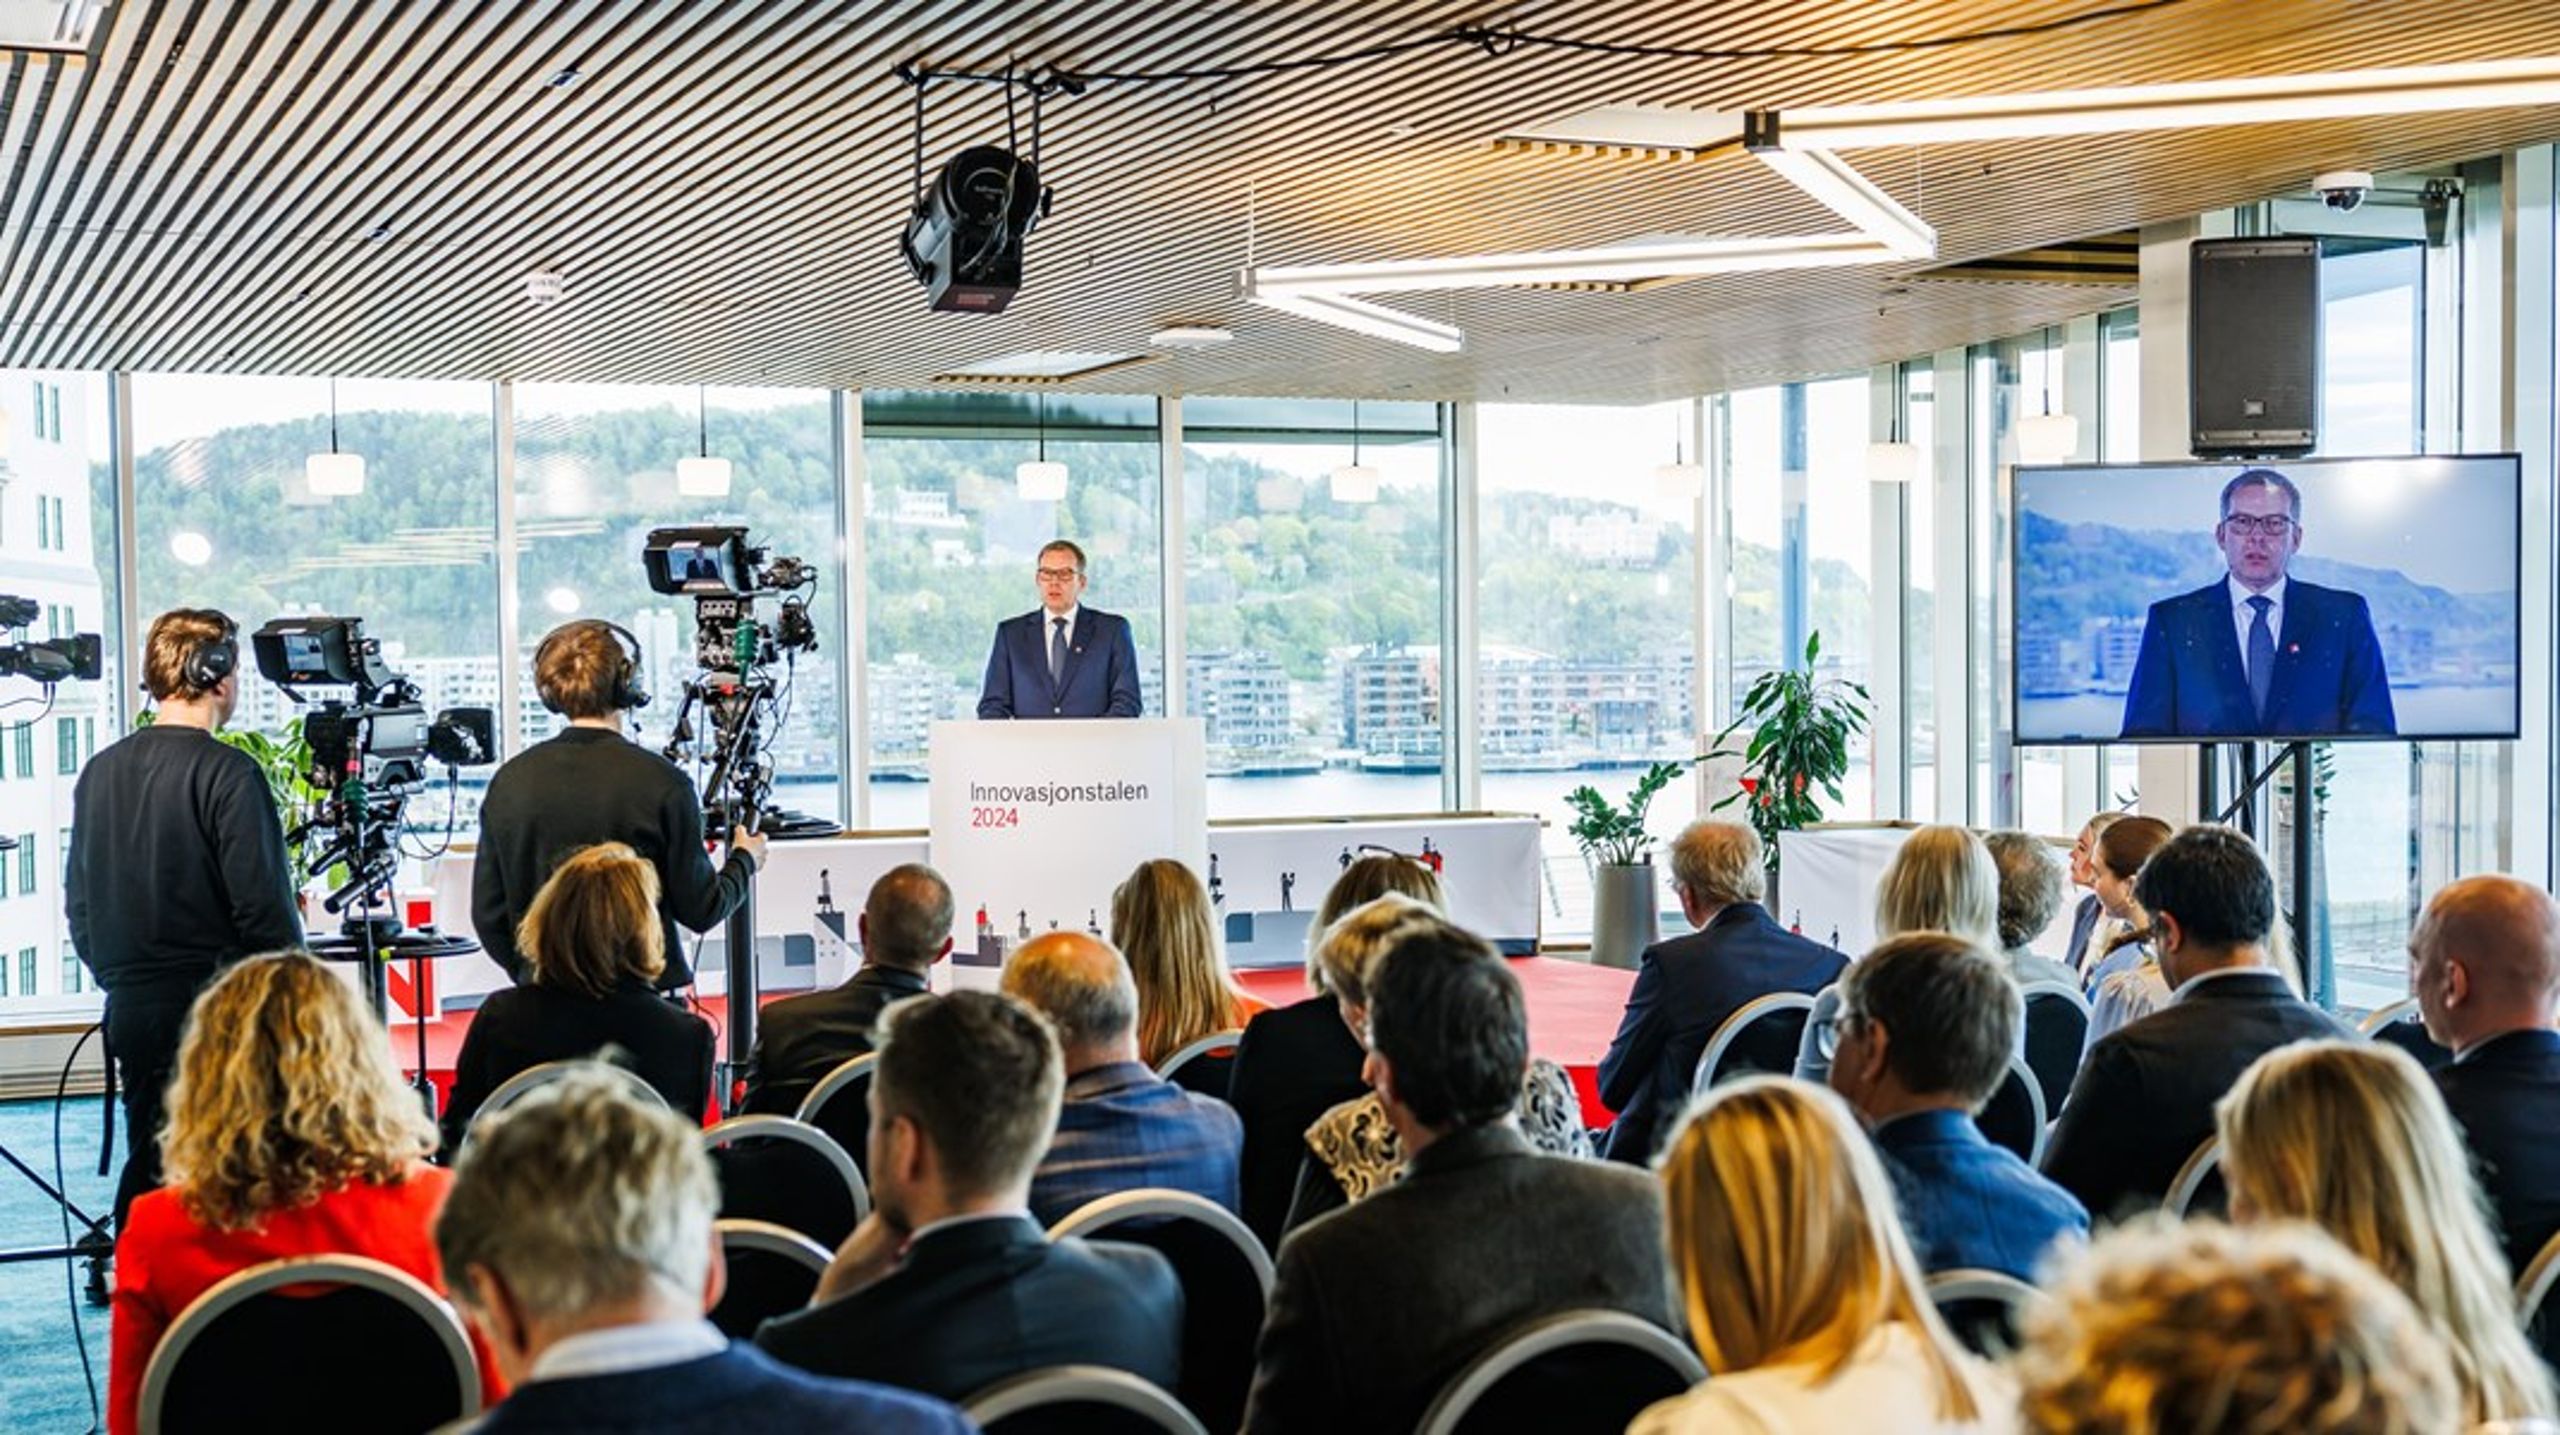 Innovasjon Norges administrerende direktør Håkon Haugli lanserte mandag nyheten om at et senter for Indre marked-spørsmål skal opprettes.&nbsp;